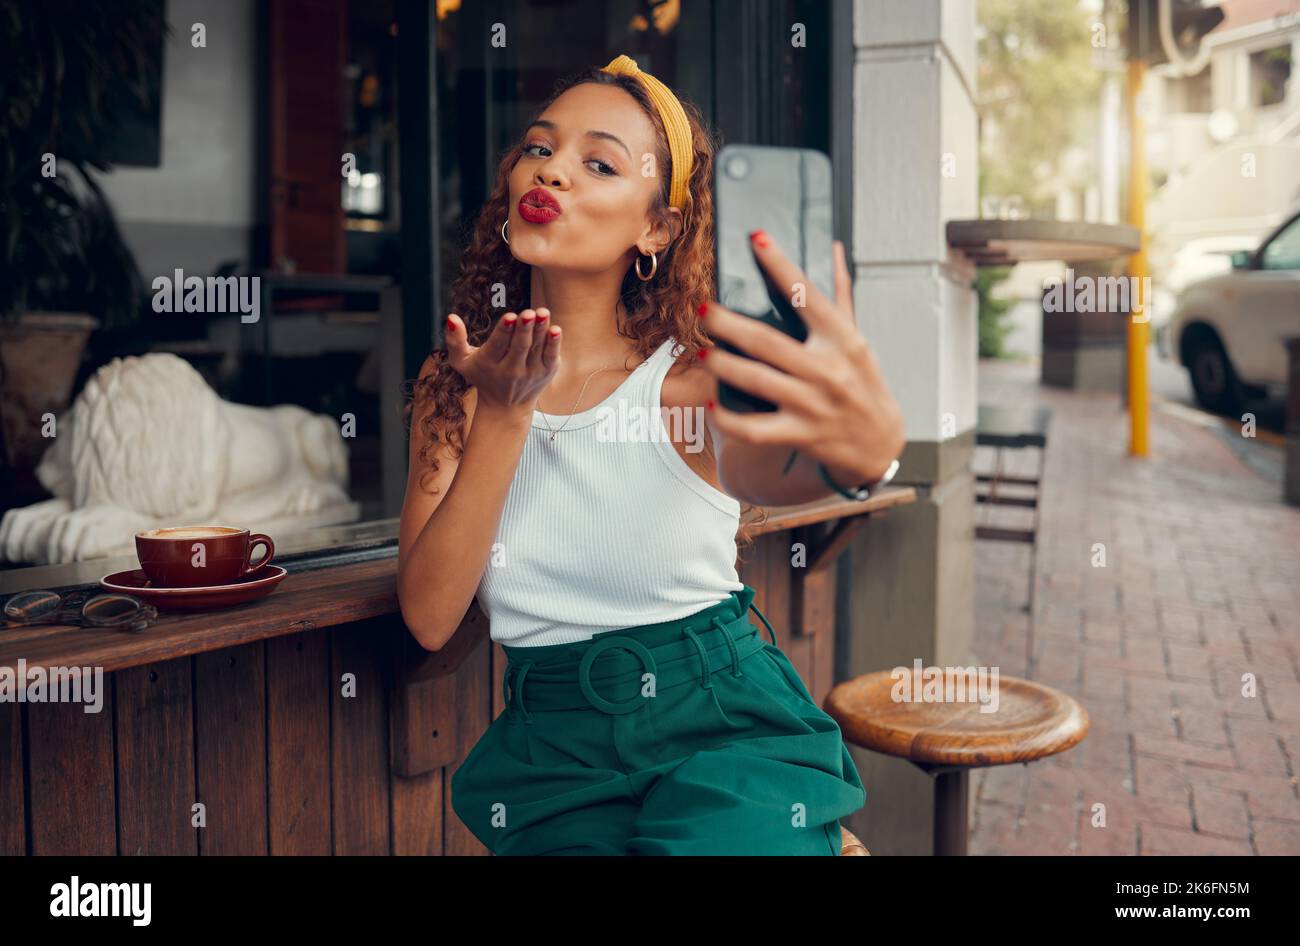 Caffè, selfie smartphone e donna nera con caffè per la recensione di ristoranti sui social media, marketing e gen z lifestyle. Cliente influencer al caffè Foto Stock